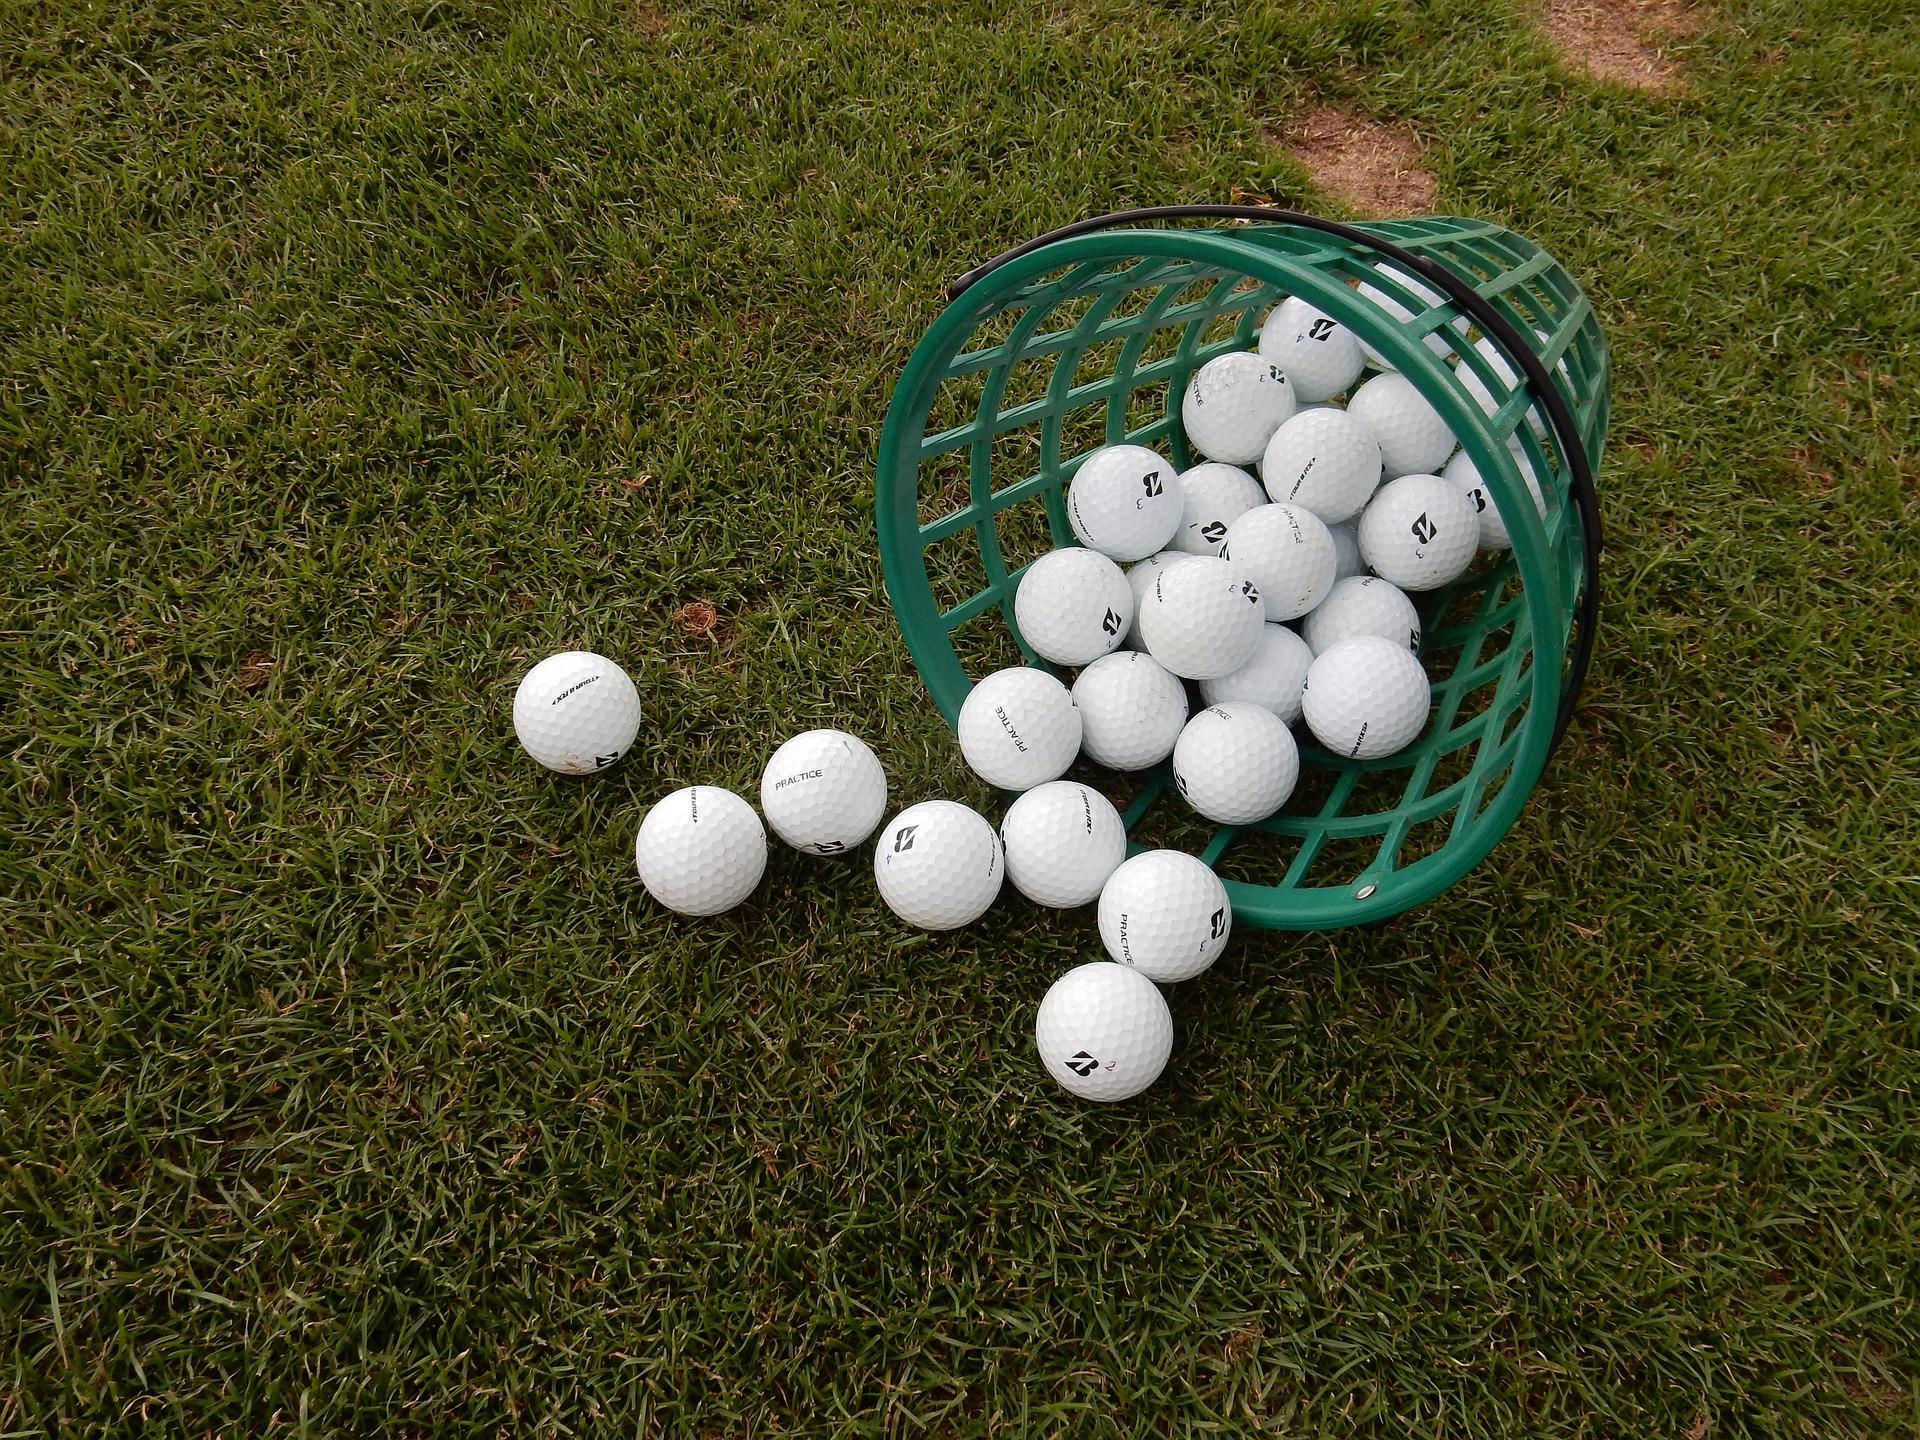 ゴルフ初心者向け 効果的な練習方法を徹底解説 1人でも自宅でも上手くなれます ウルトラゴルフ